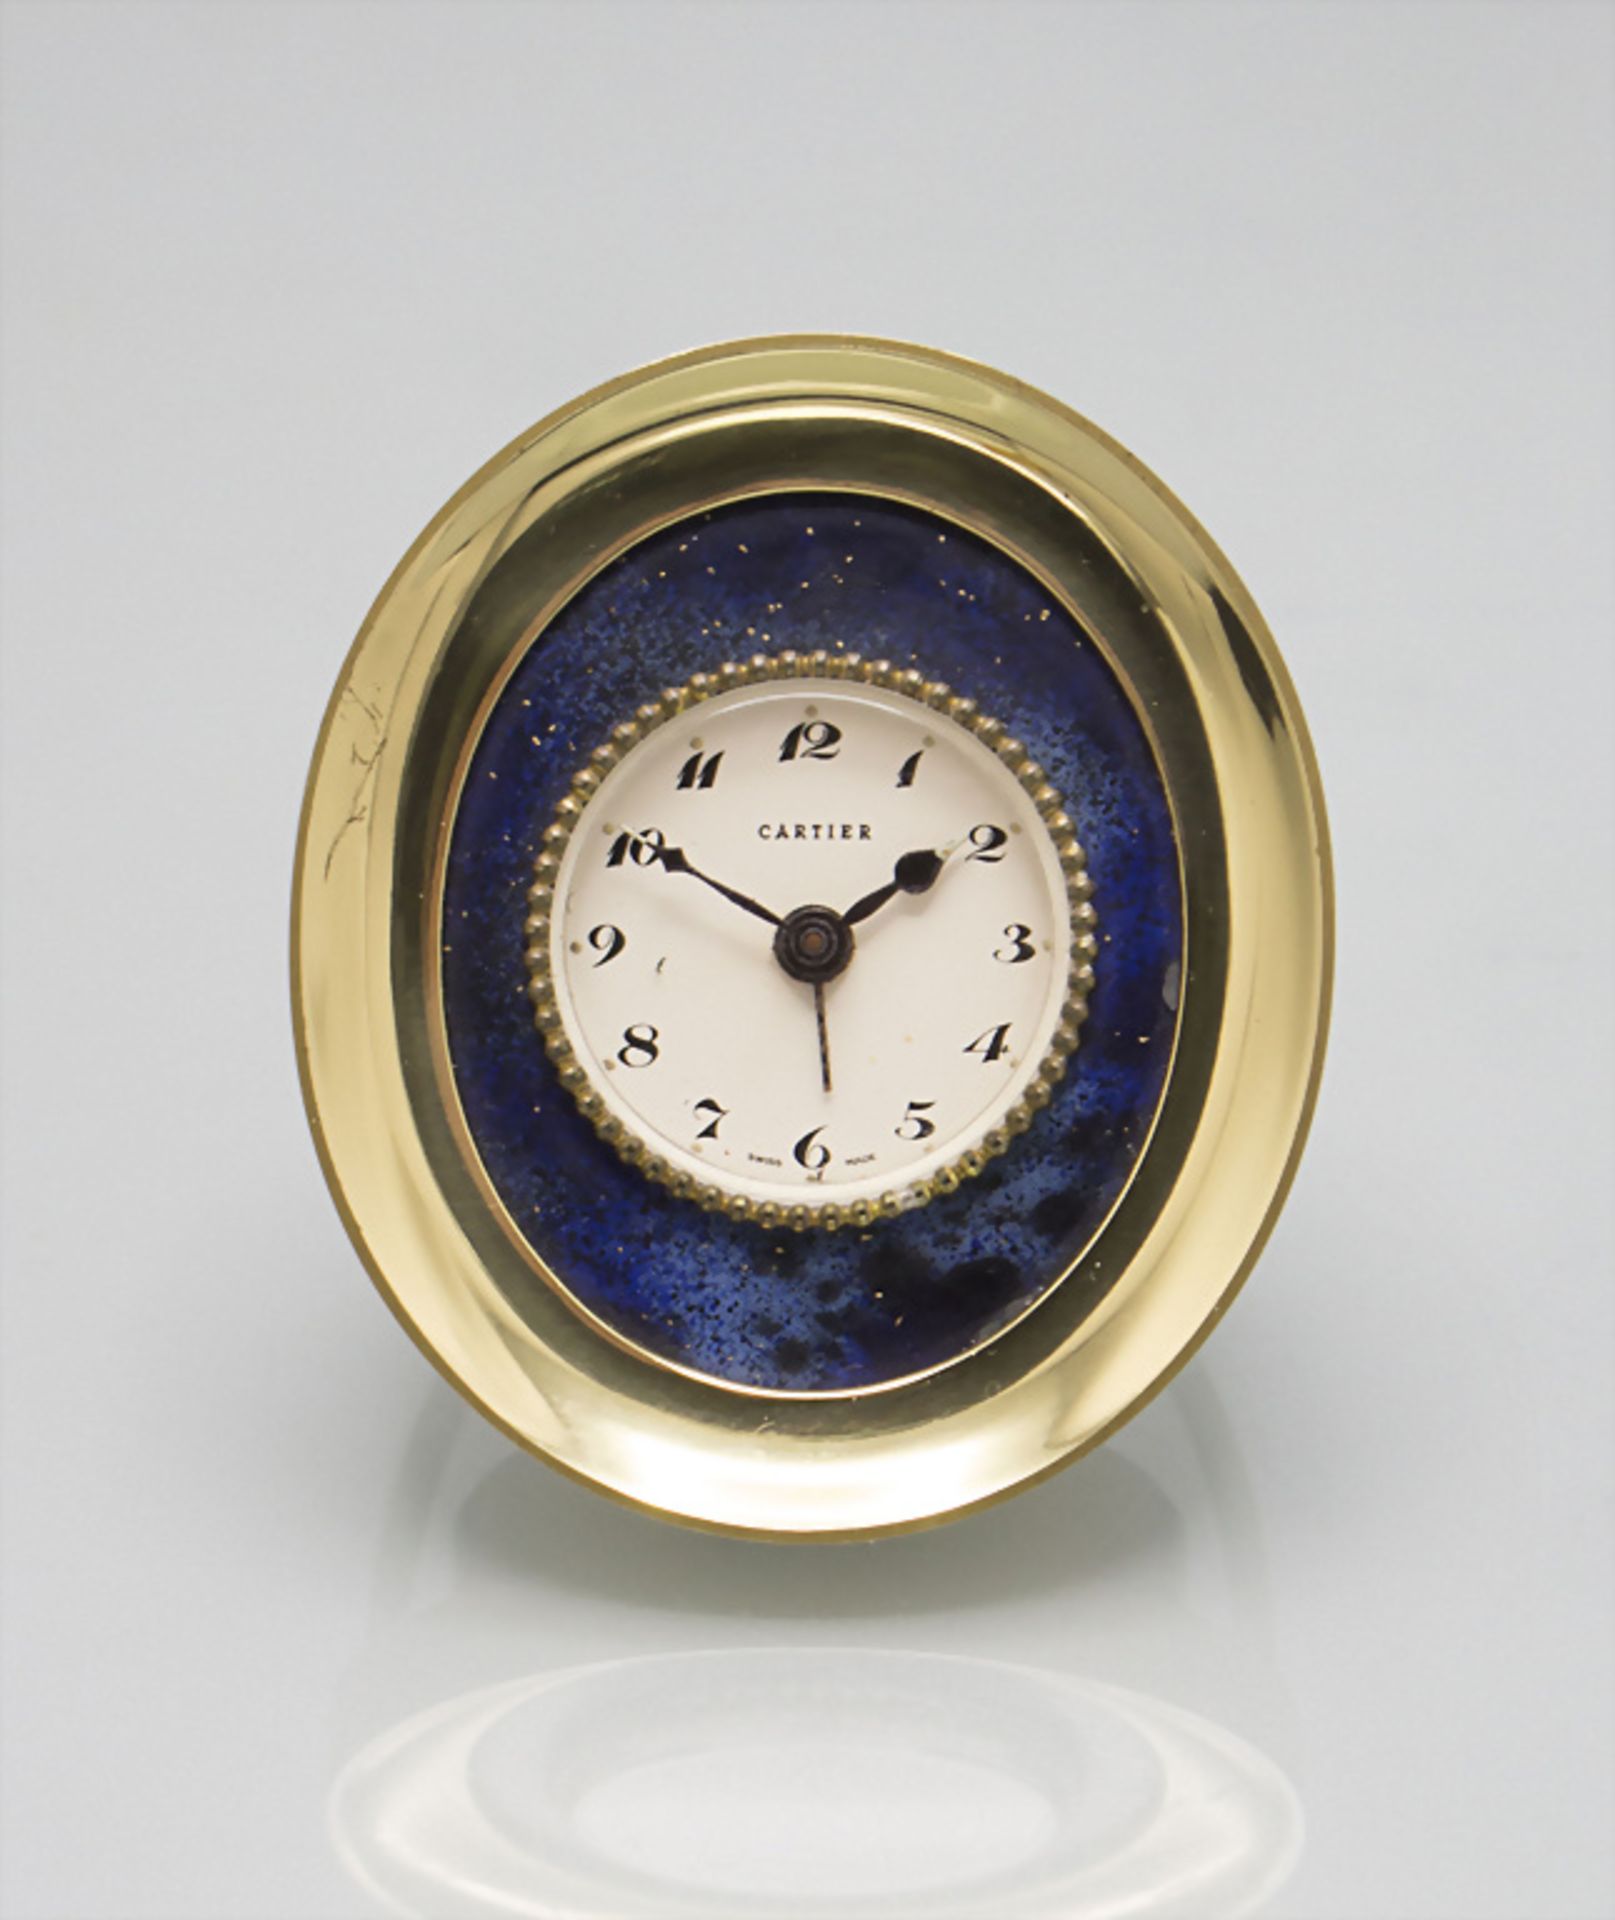 Tischuhr / A table clock, Cartier, Swiss / Schweiz, um 1960